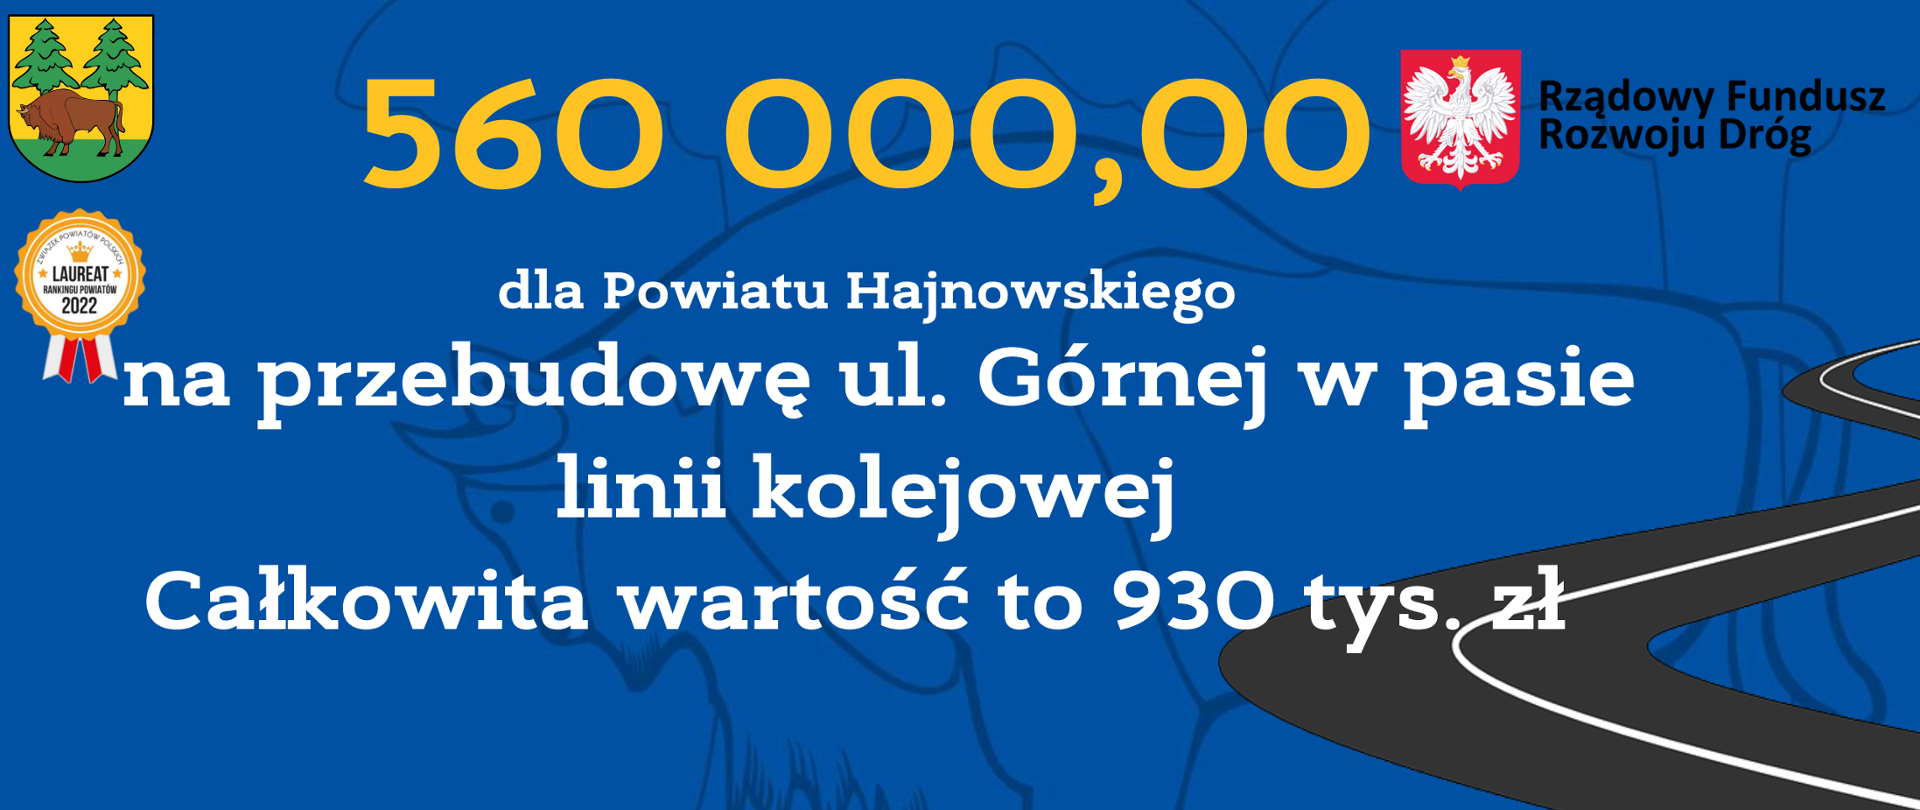 560 000,00 dla Powiatu Hajnowskiego na przebudowę ul. Górnej w pasie linii kolejowej Całkowita wartość to 930 tys. zł